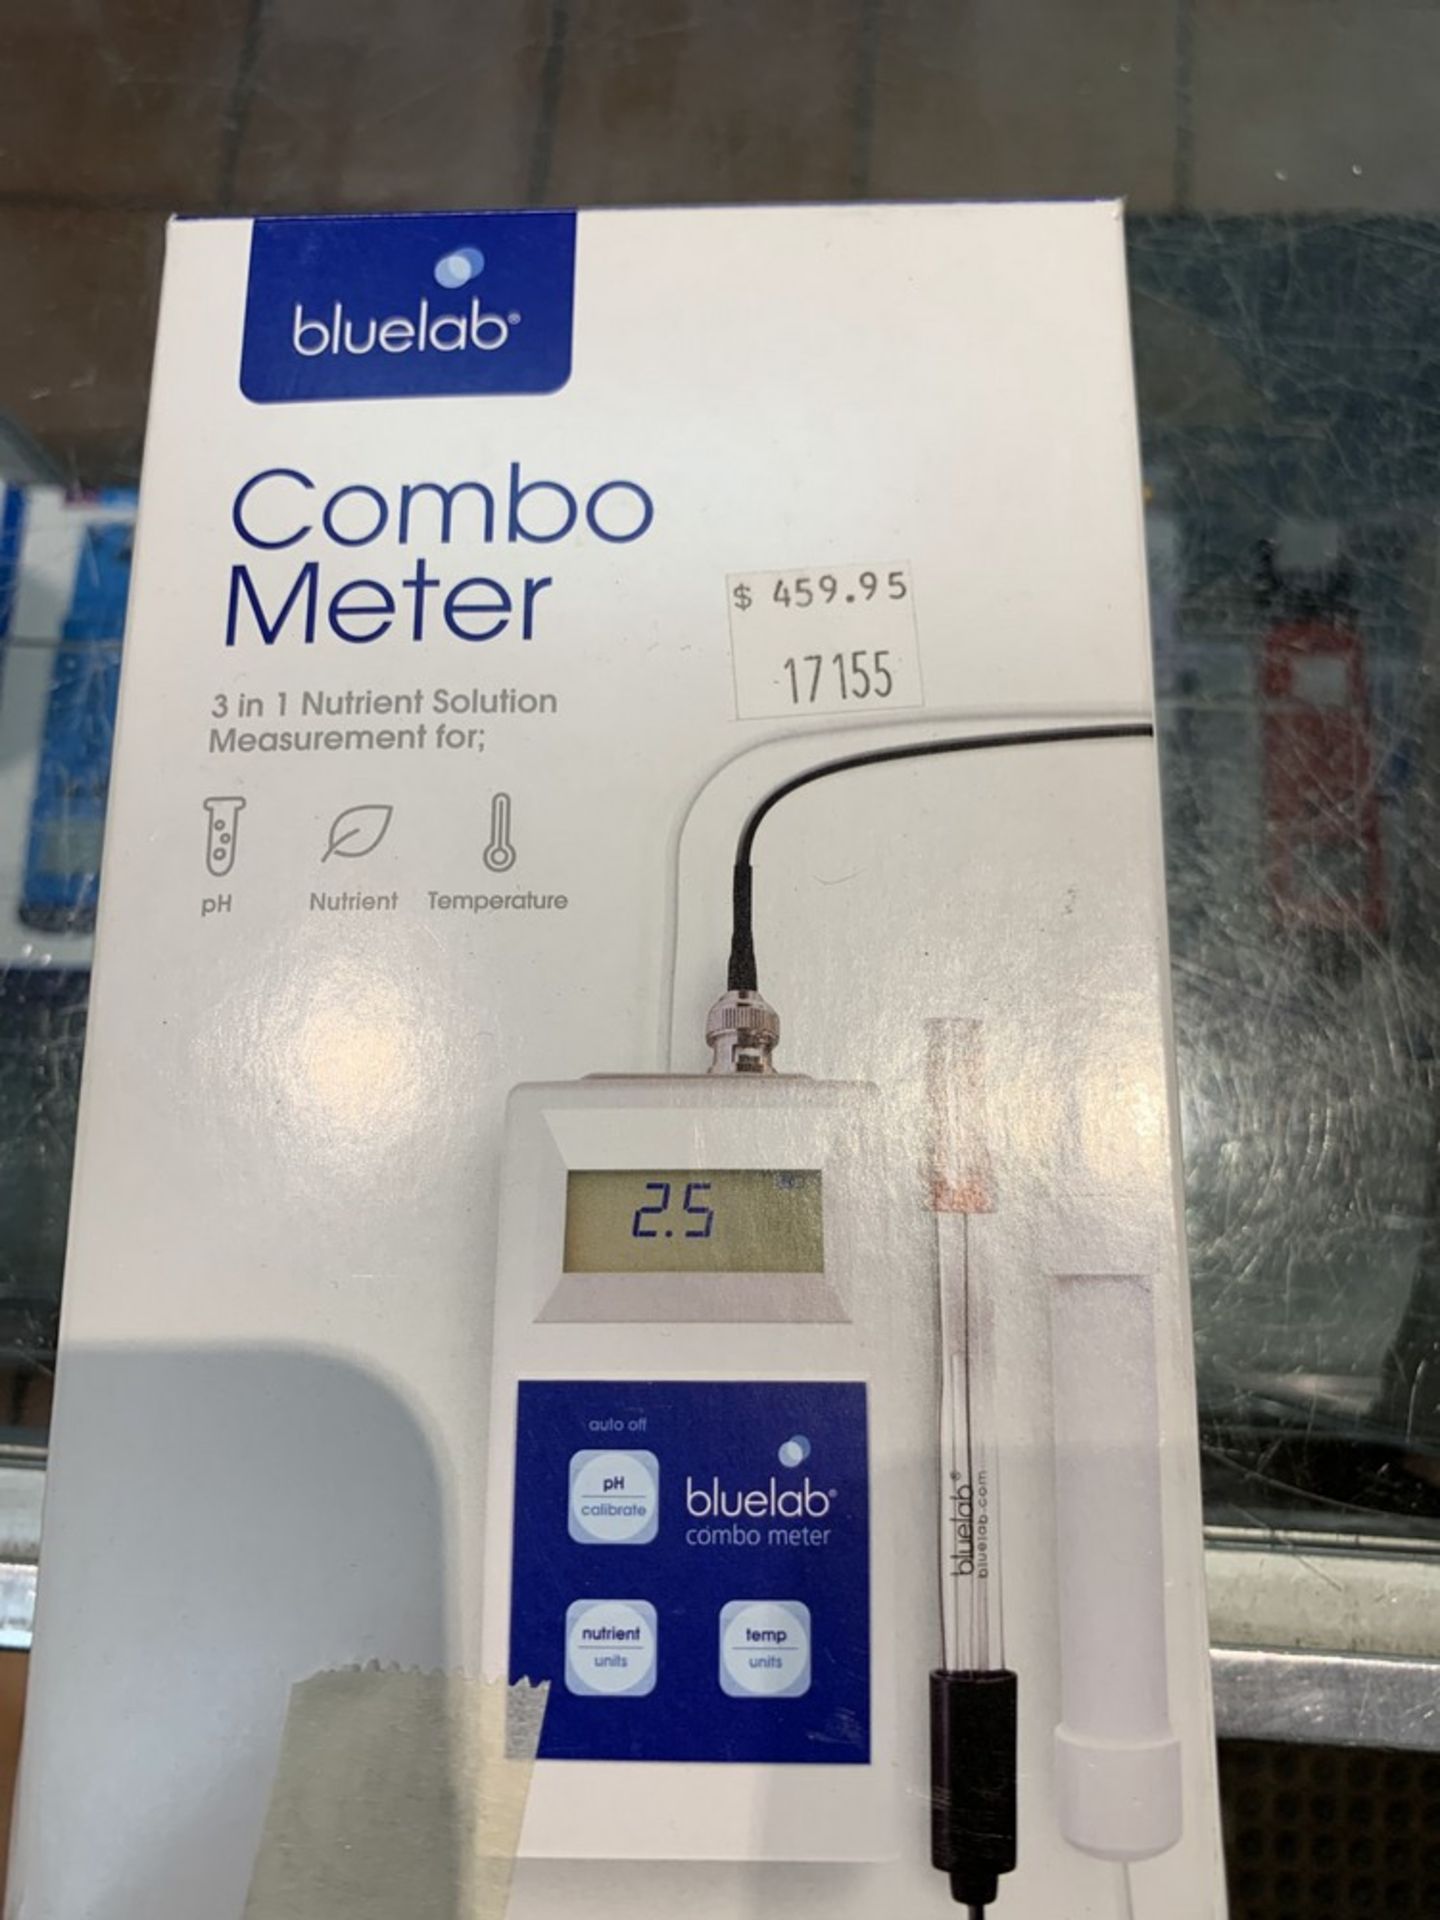 Bluelab - Combo meter